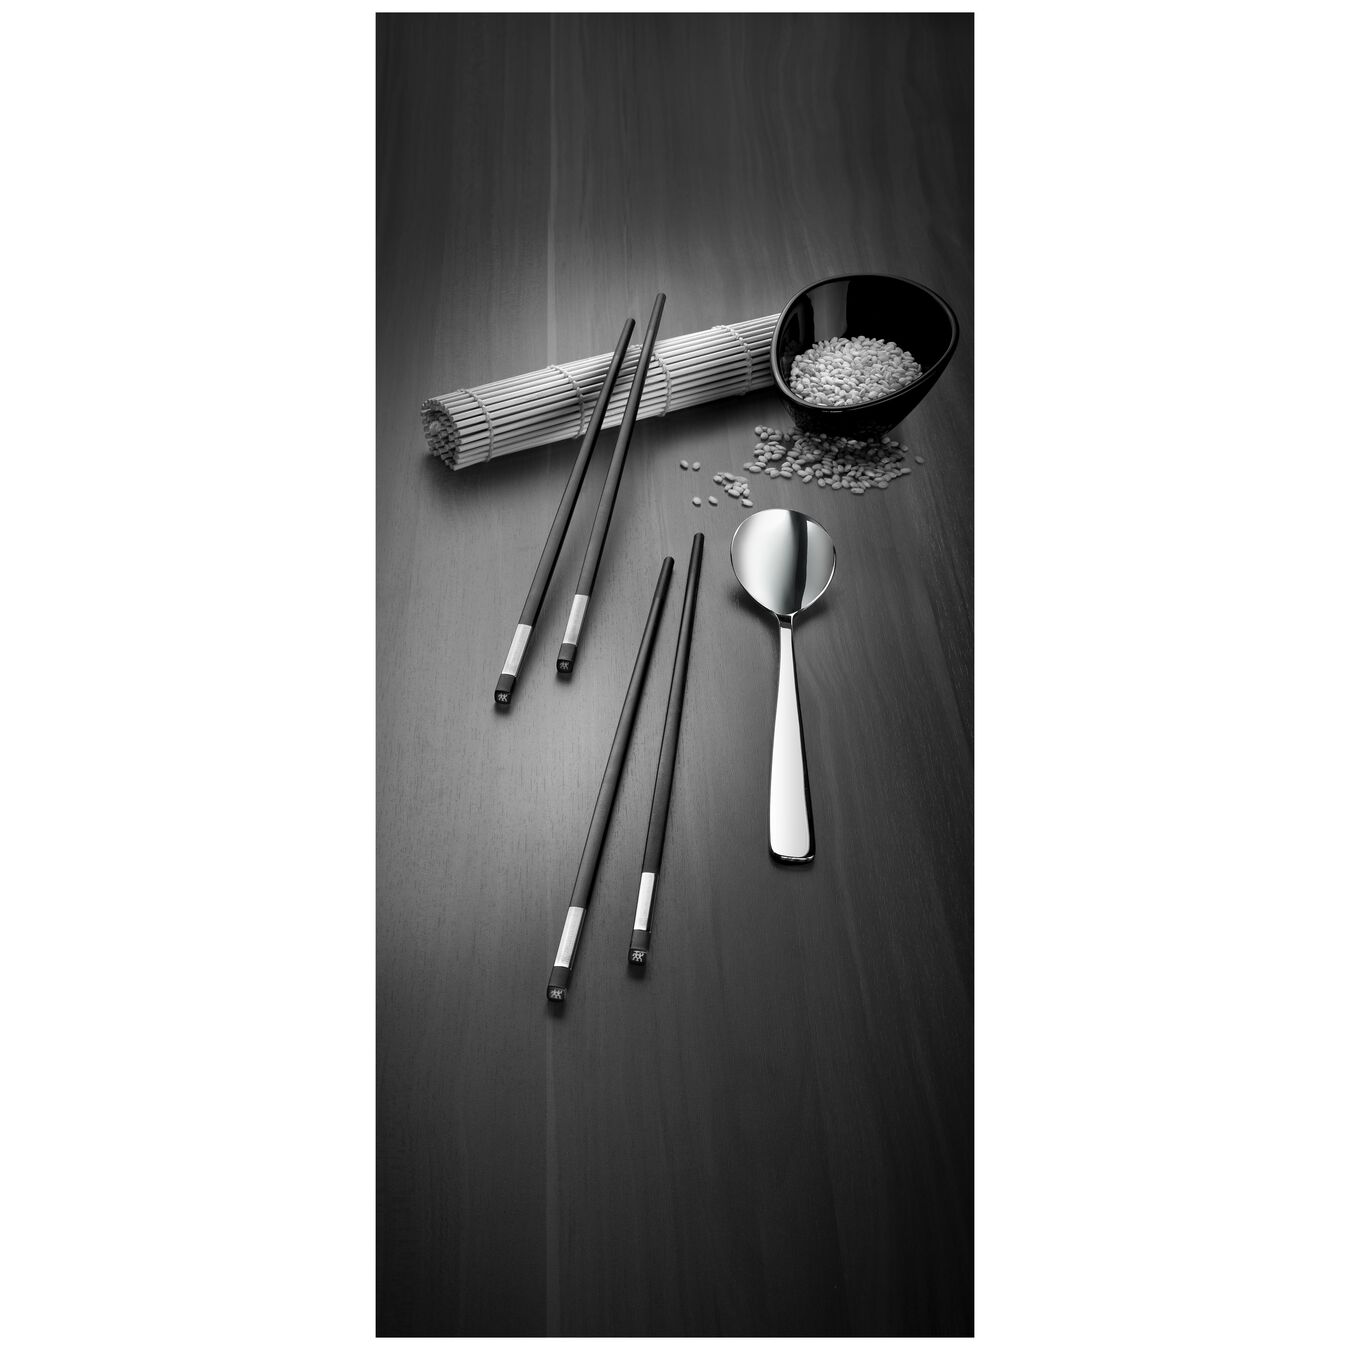 Chopstick Set 5-tlg, mattiert/poliert,,large 3